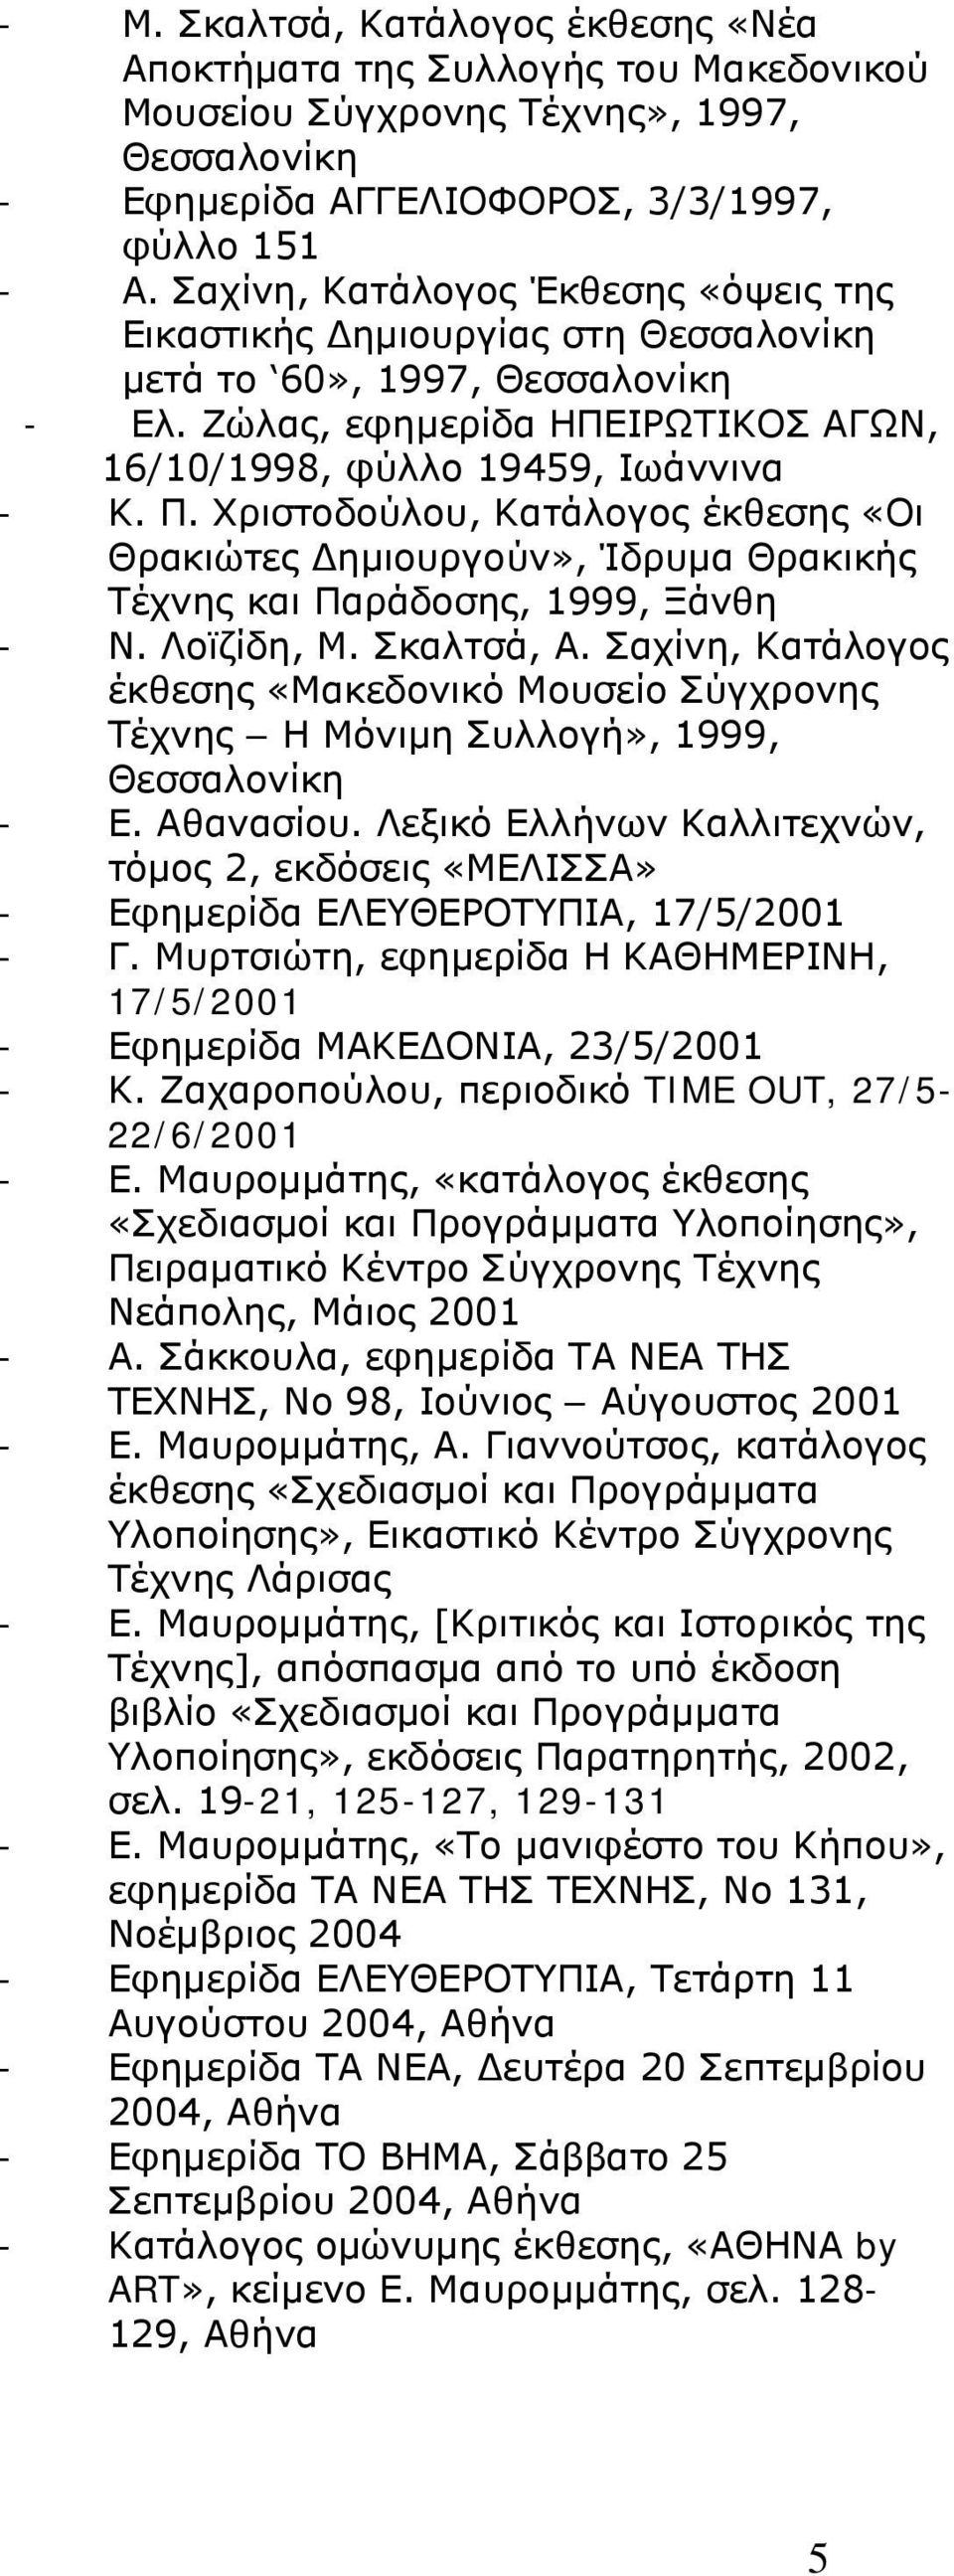 Χριστοδούλου, Κατάλογος έκθεσης «Οι Θρακιώτες Δημιουργούν», Ίδρυμα Θρακικής Τέχνης και Παράδοσης, 1999, Ξάνθη - Ν. Λοϊζίδη, Μ. Σκαλτσά, Α.